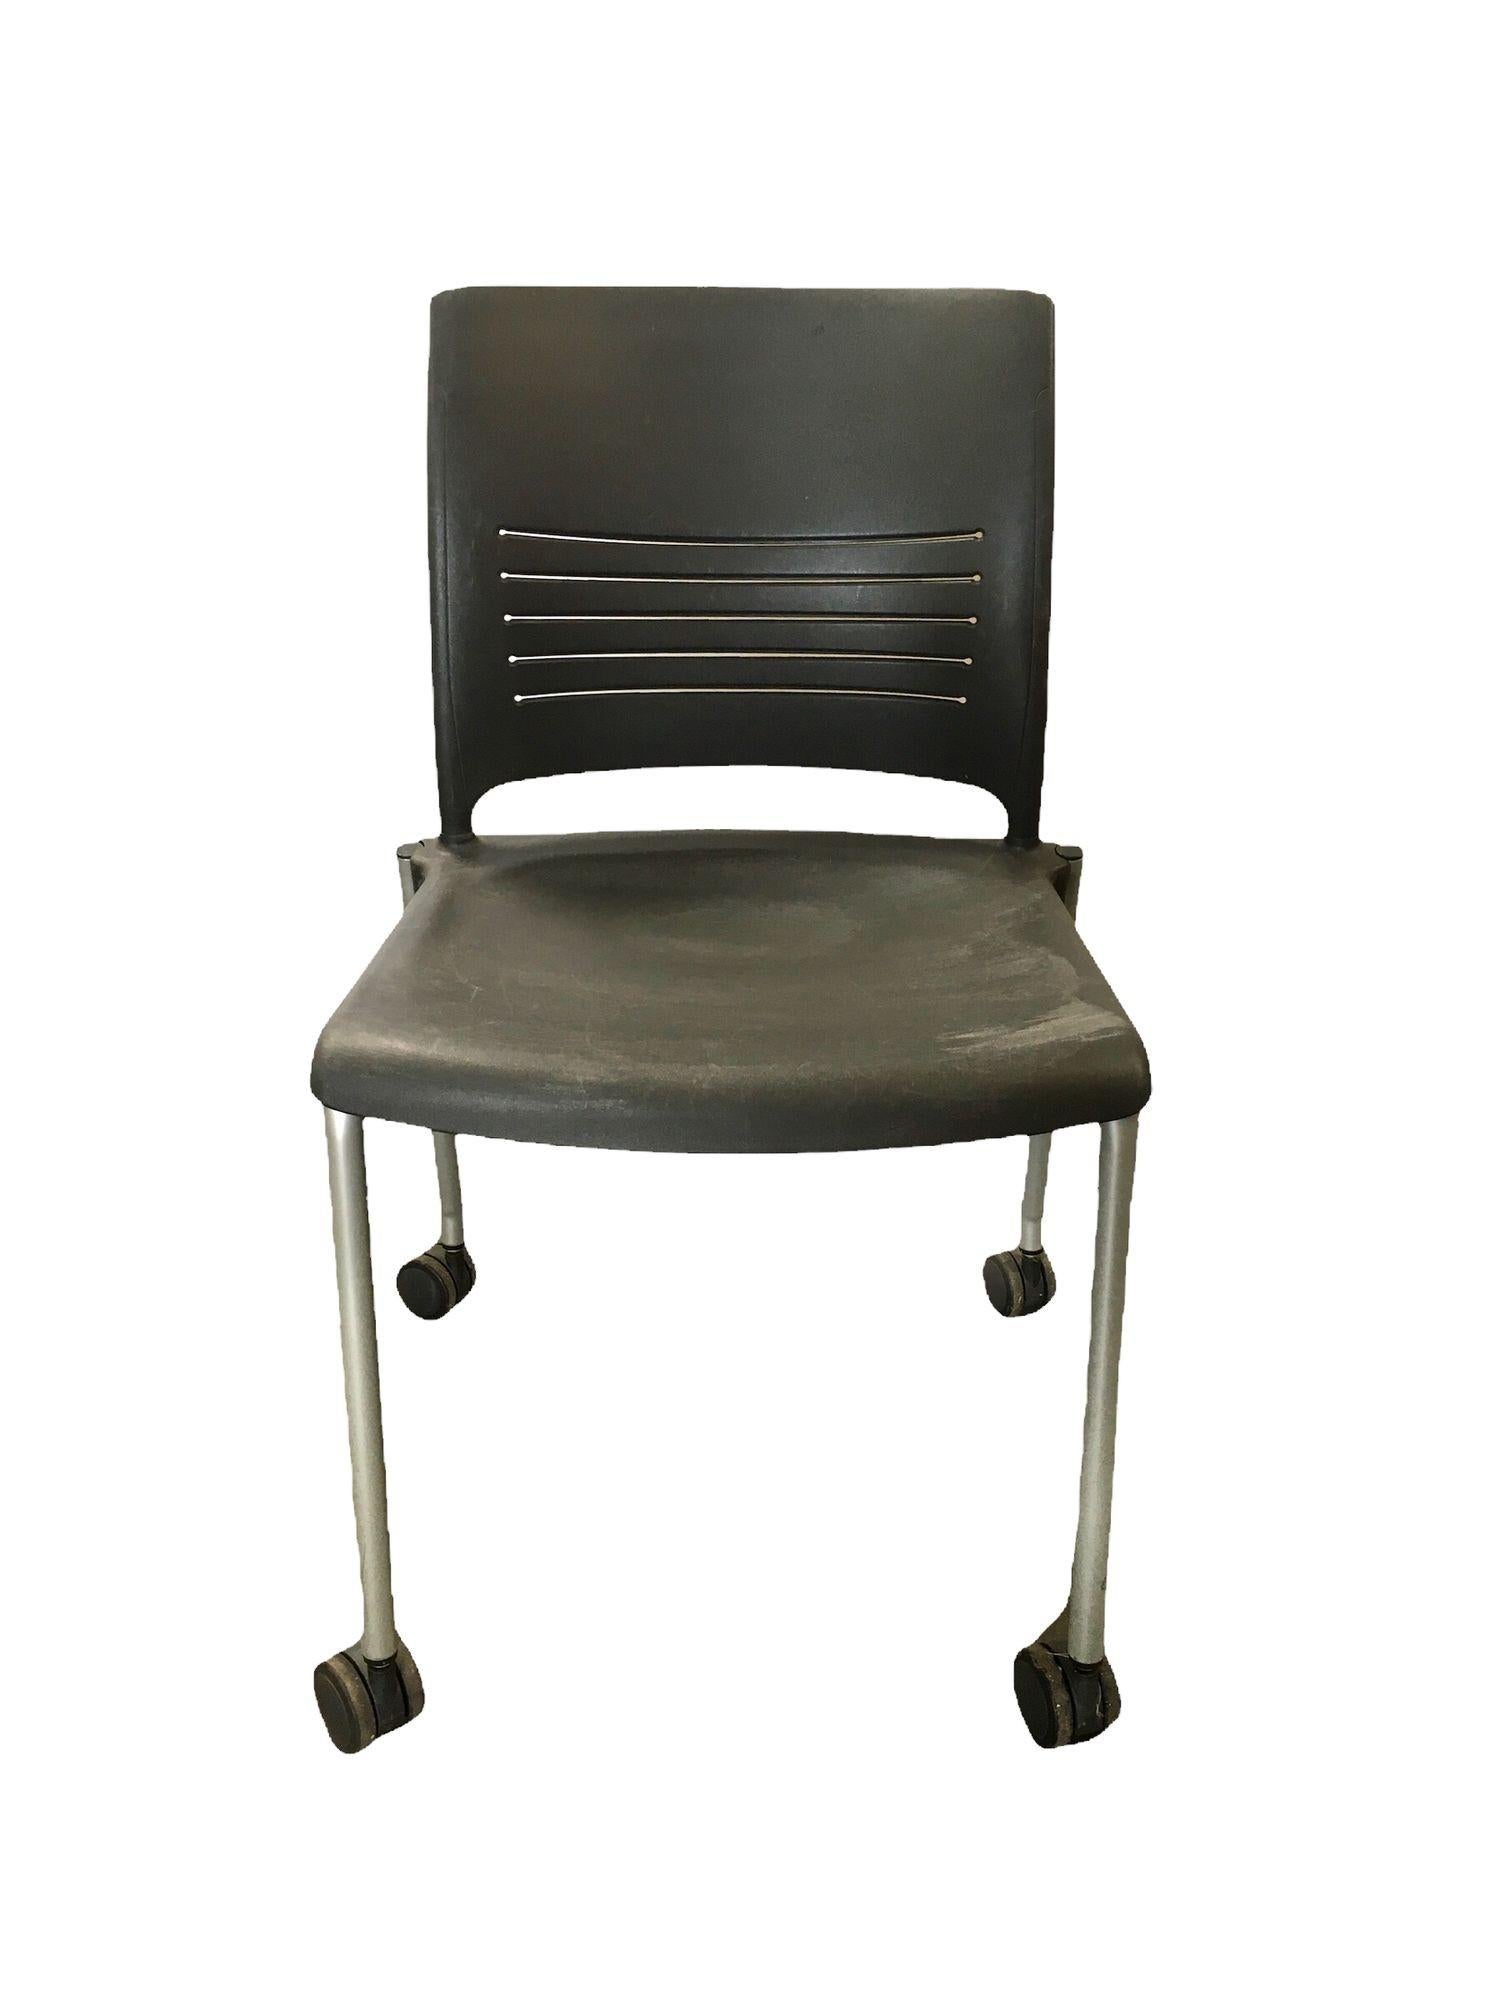 Vintage Dark Grey Plastic Rolling Desk Chairs by Giancarlo Piretti for Strive. Ces chaises en plastique sont faciles à déplacer grâce aux roues situées sur le fond et peuvent servir de chaises de bureau, de salles d'attente ou même de sièges